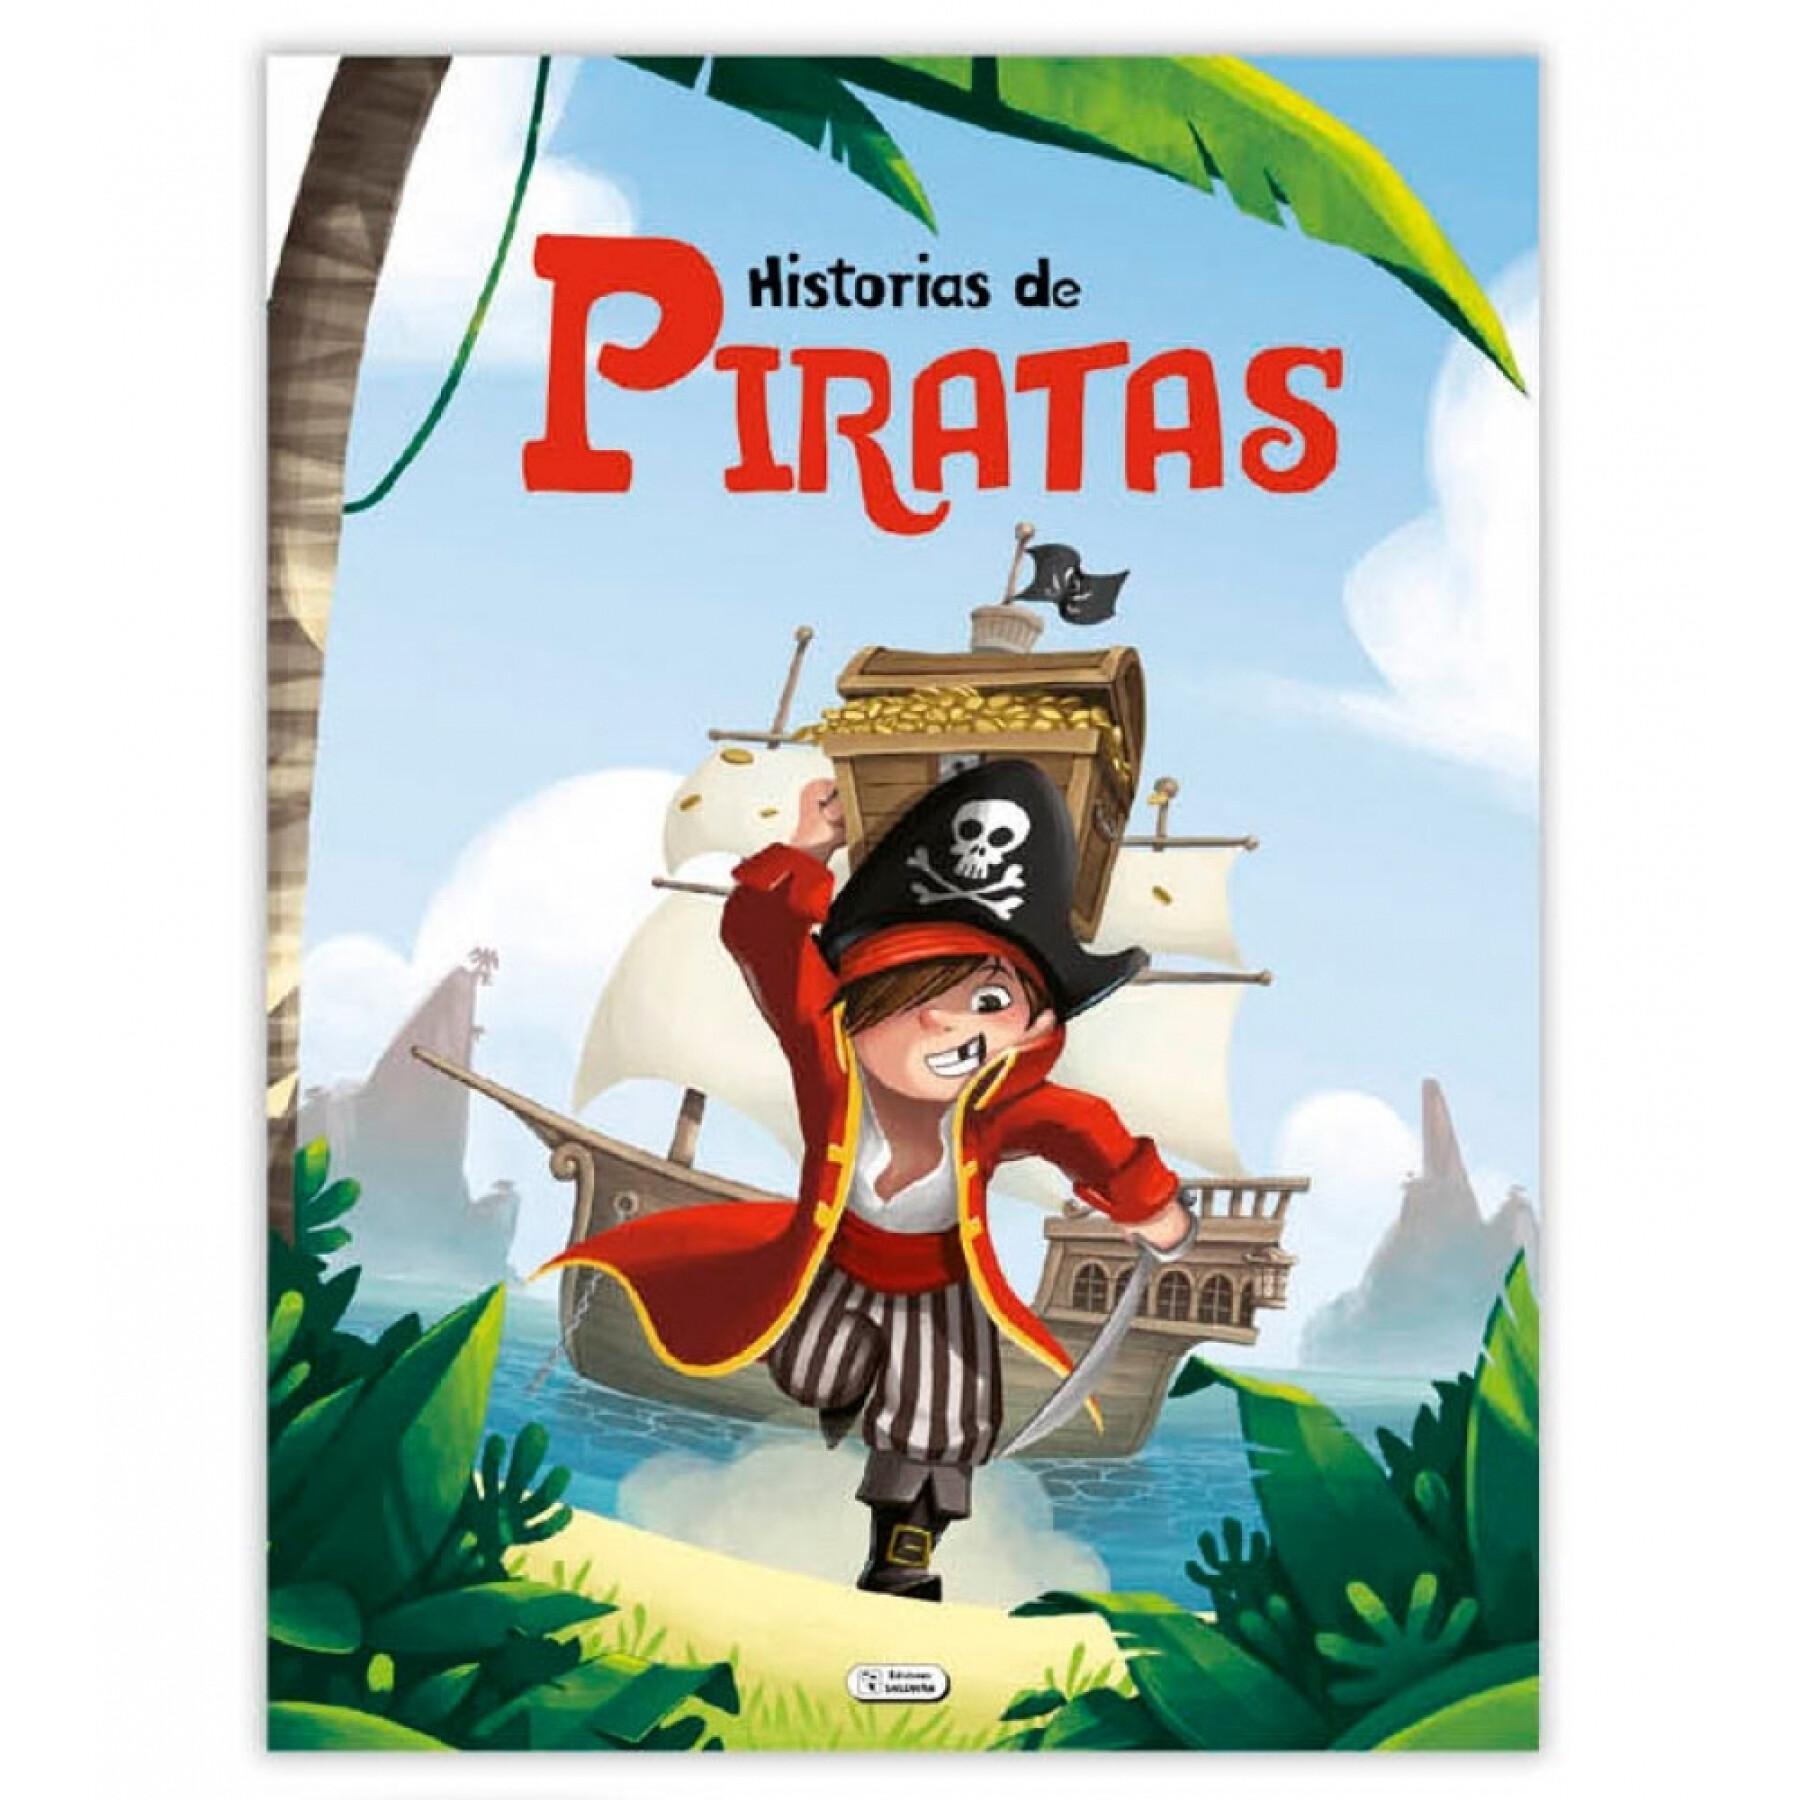 Storybook 120 stron opowieści z pirates Ediciones Saldaña